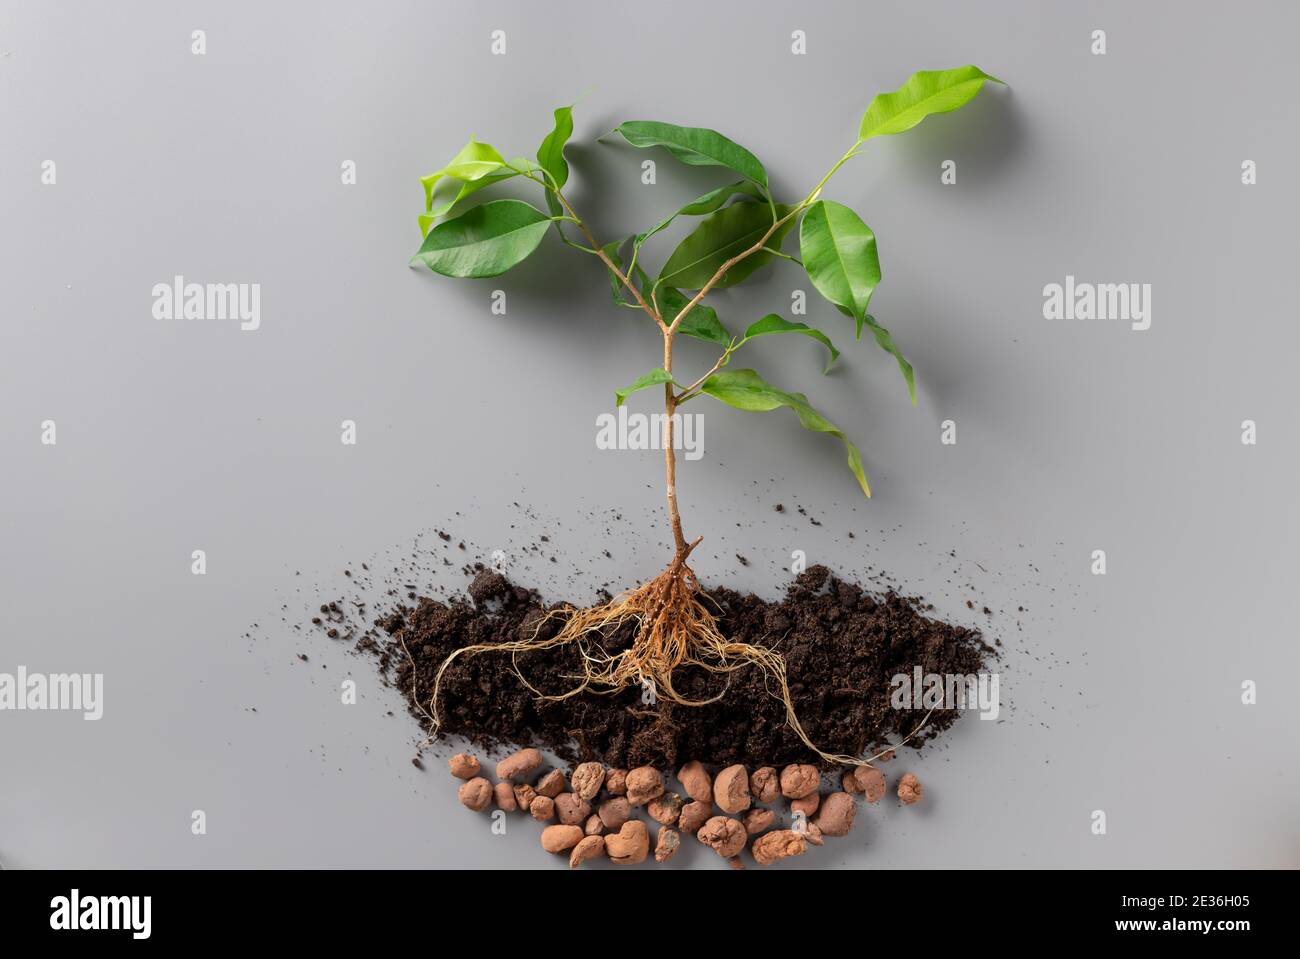 Junge grüne Pflanze mit Erde und Drainage auf grauem Hintergrund. Neues Leben und Frühlingskonzept. Stockfoto